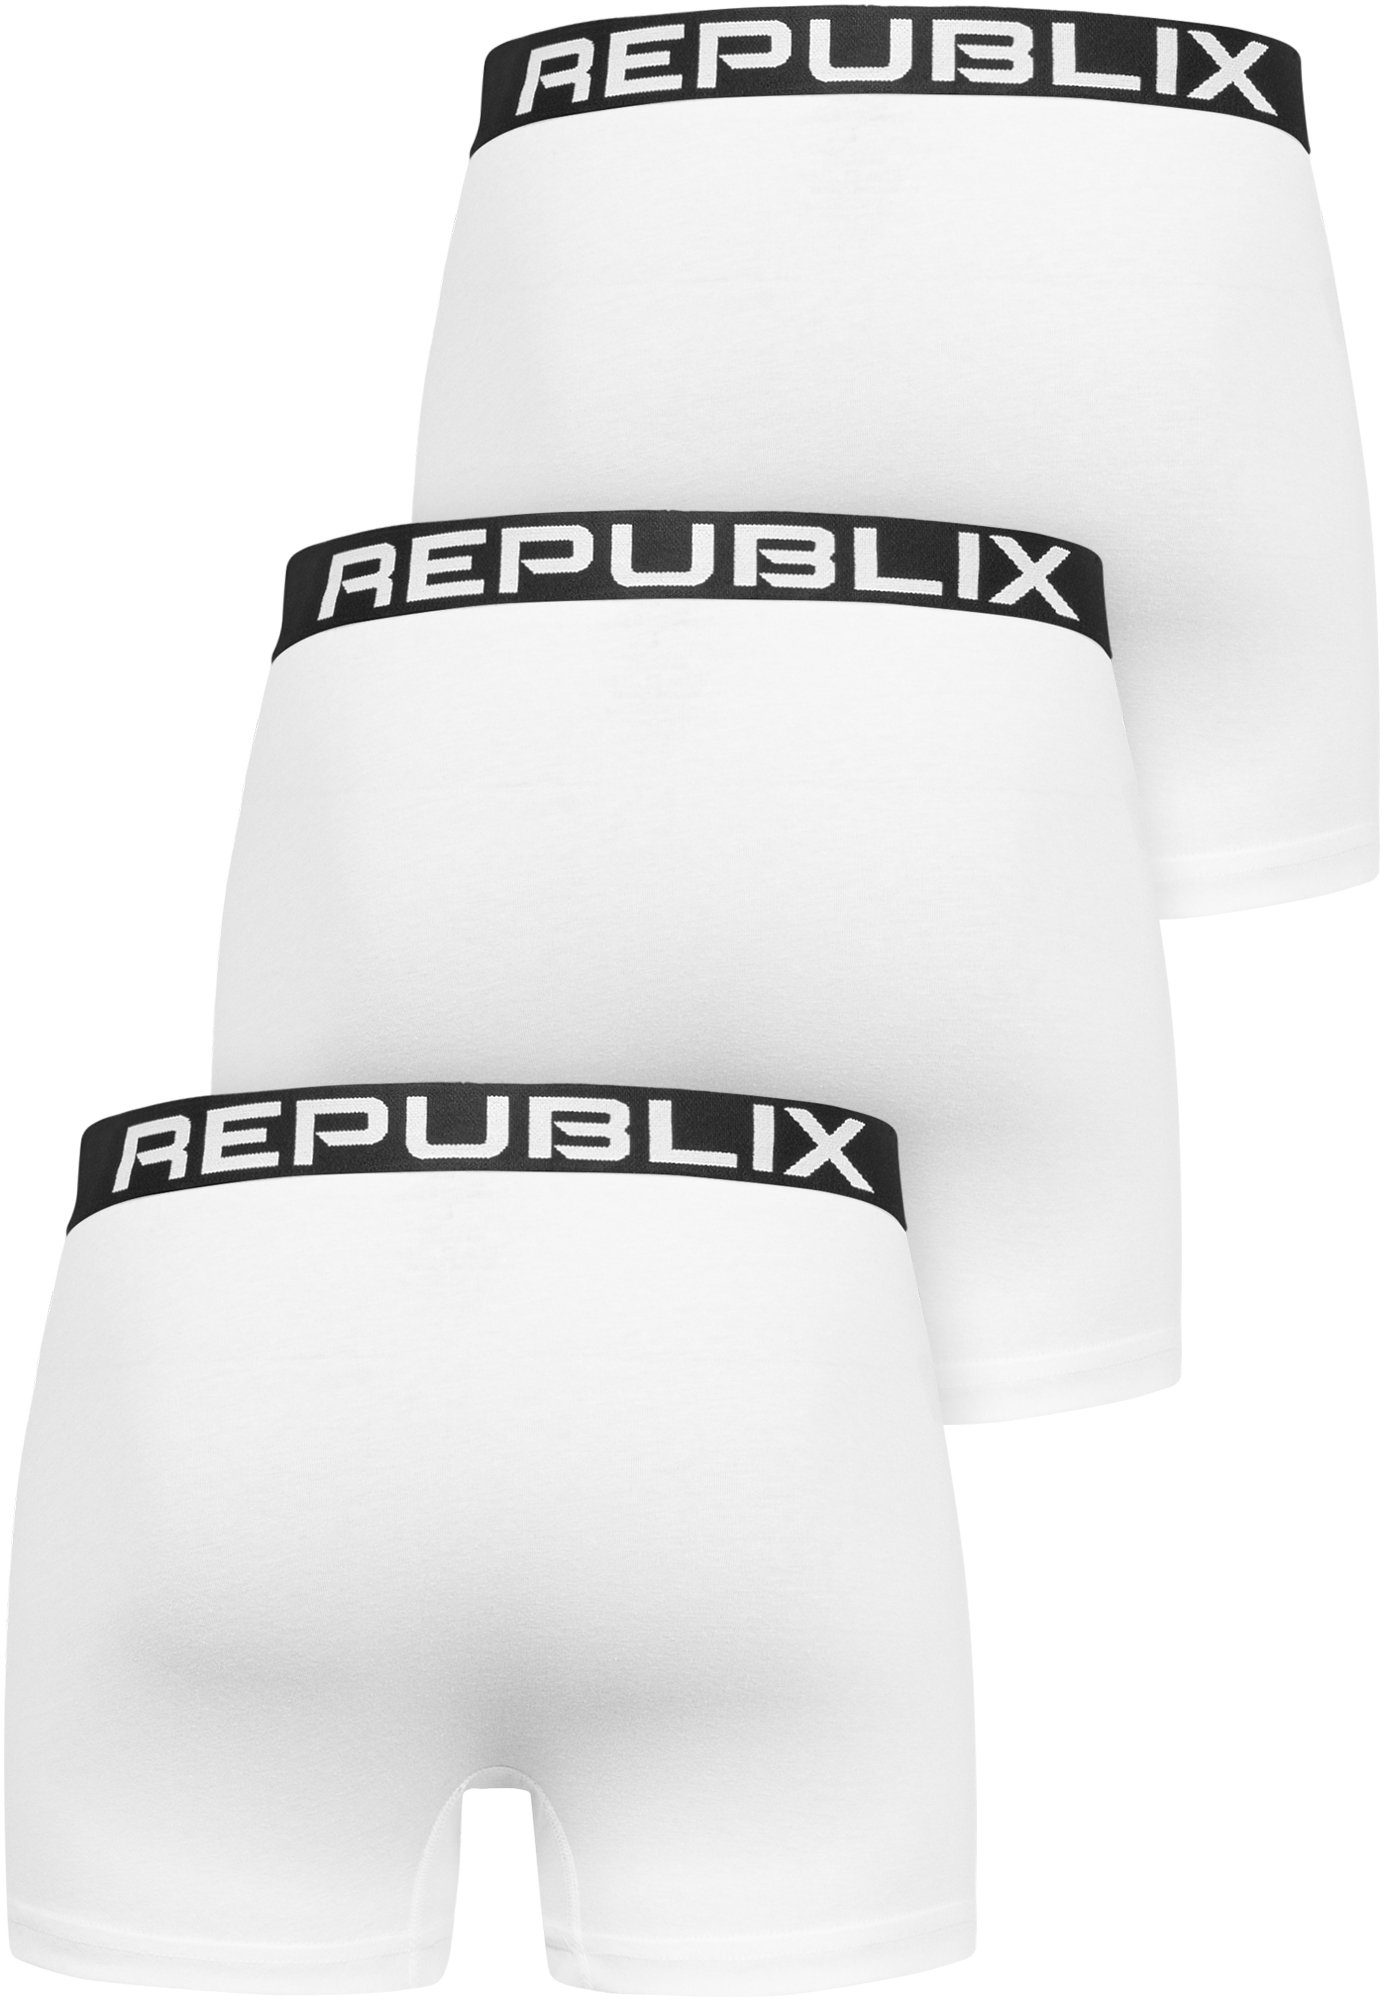 (3er-Pack) REPUBLIX Boxershorts Weiß/Schwarz Unterwäsche Unterhose Herren Männer Baumwolle DON